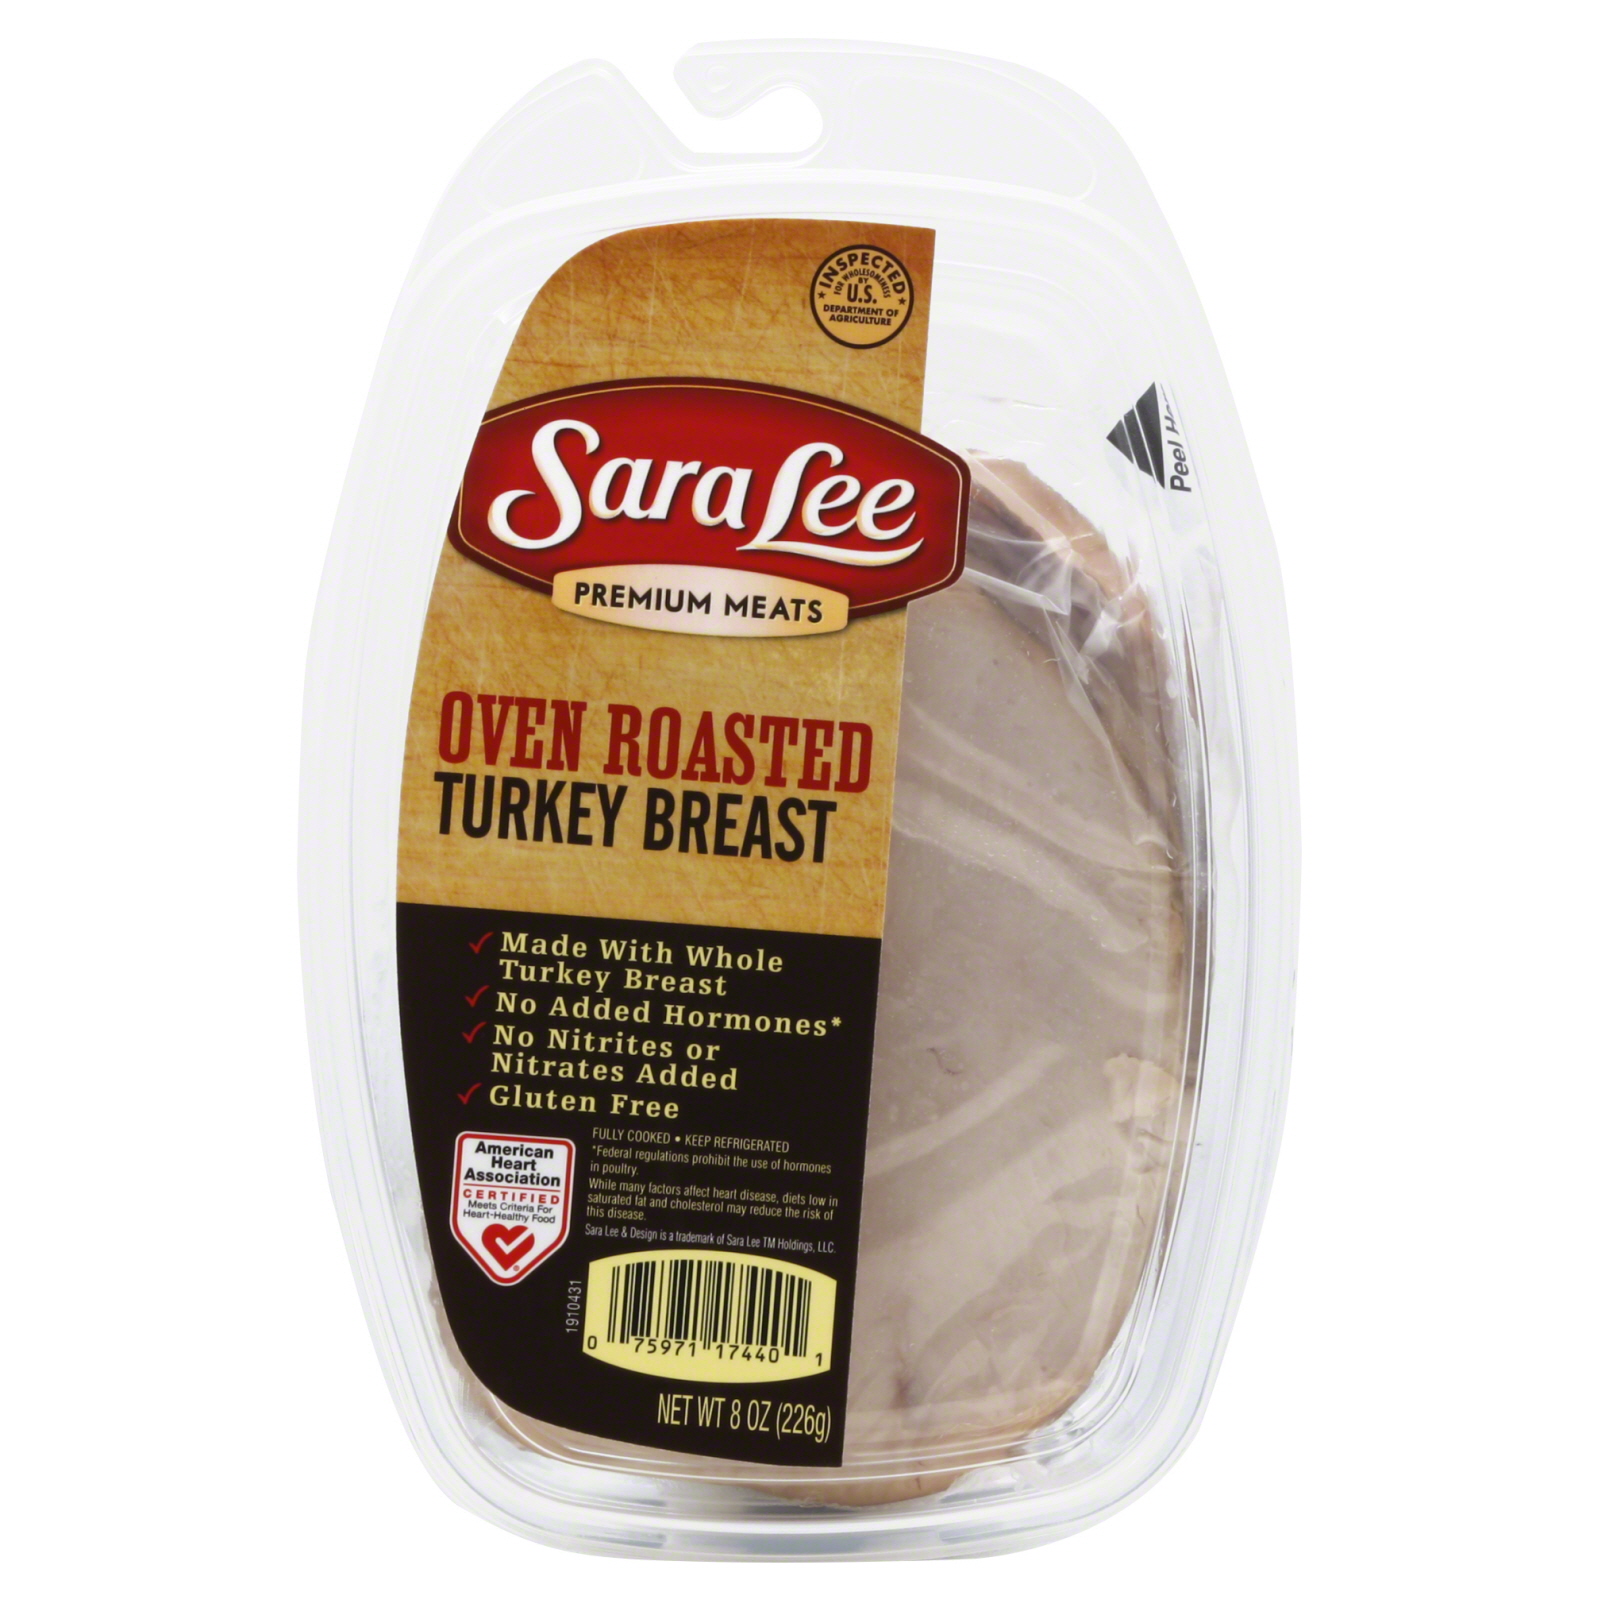 Sara Lee Oven Roasted Turkey Breast, 8 oz (226 g)